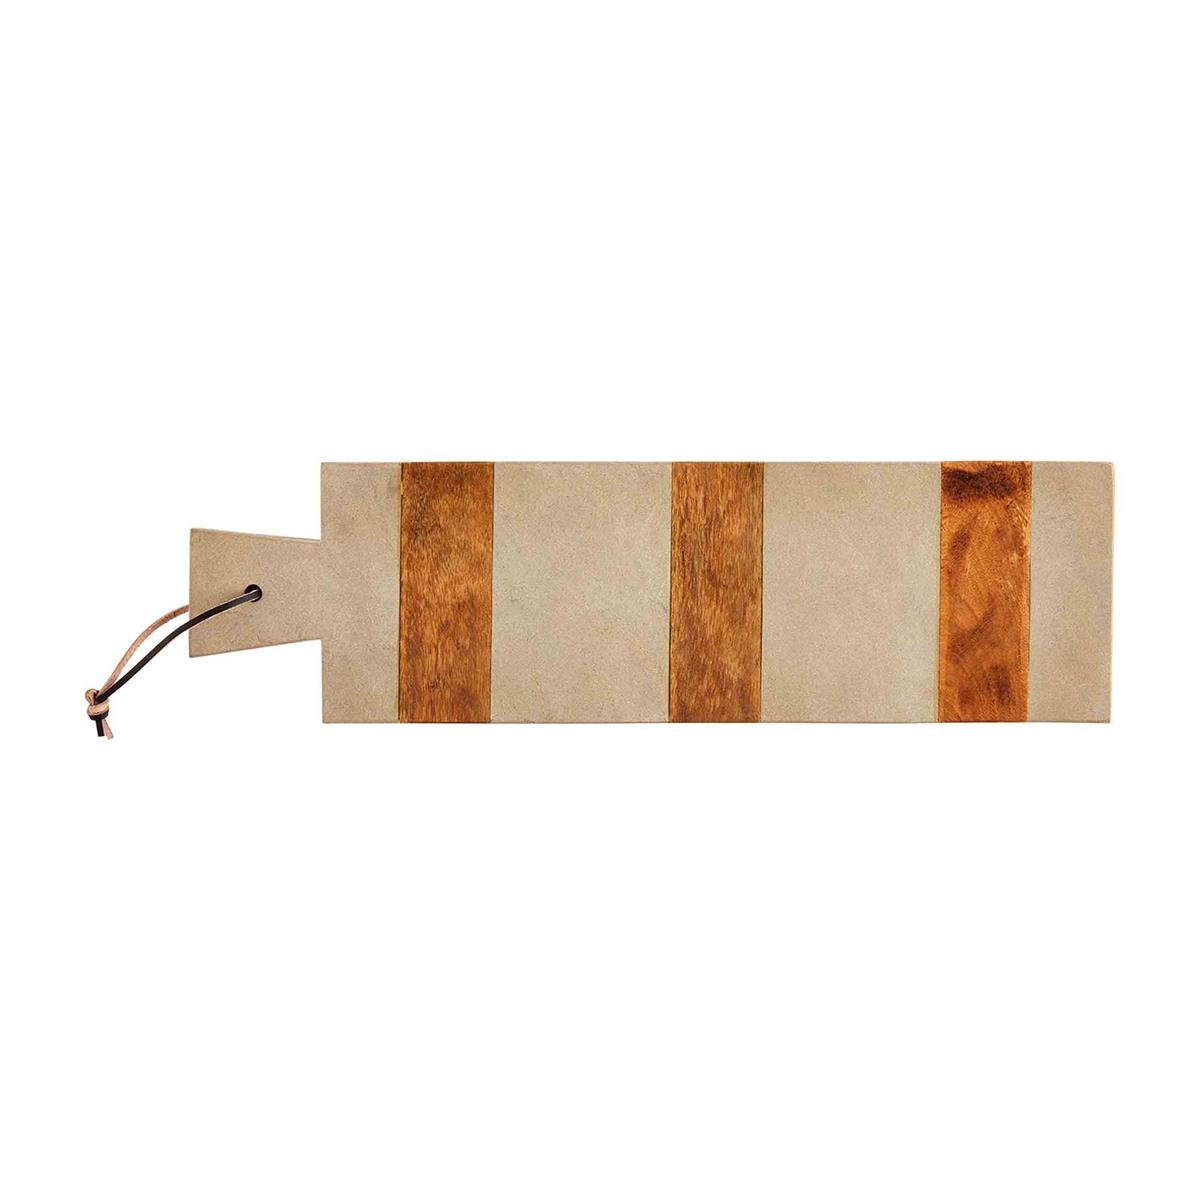 Striped Sandstone Board (2 Styles)